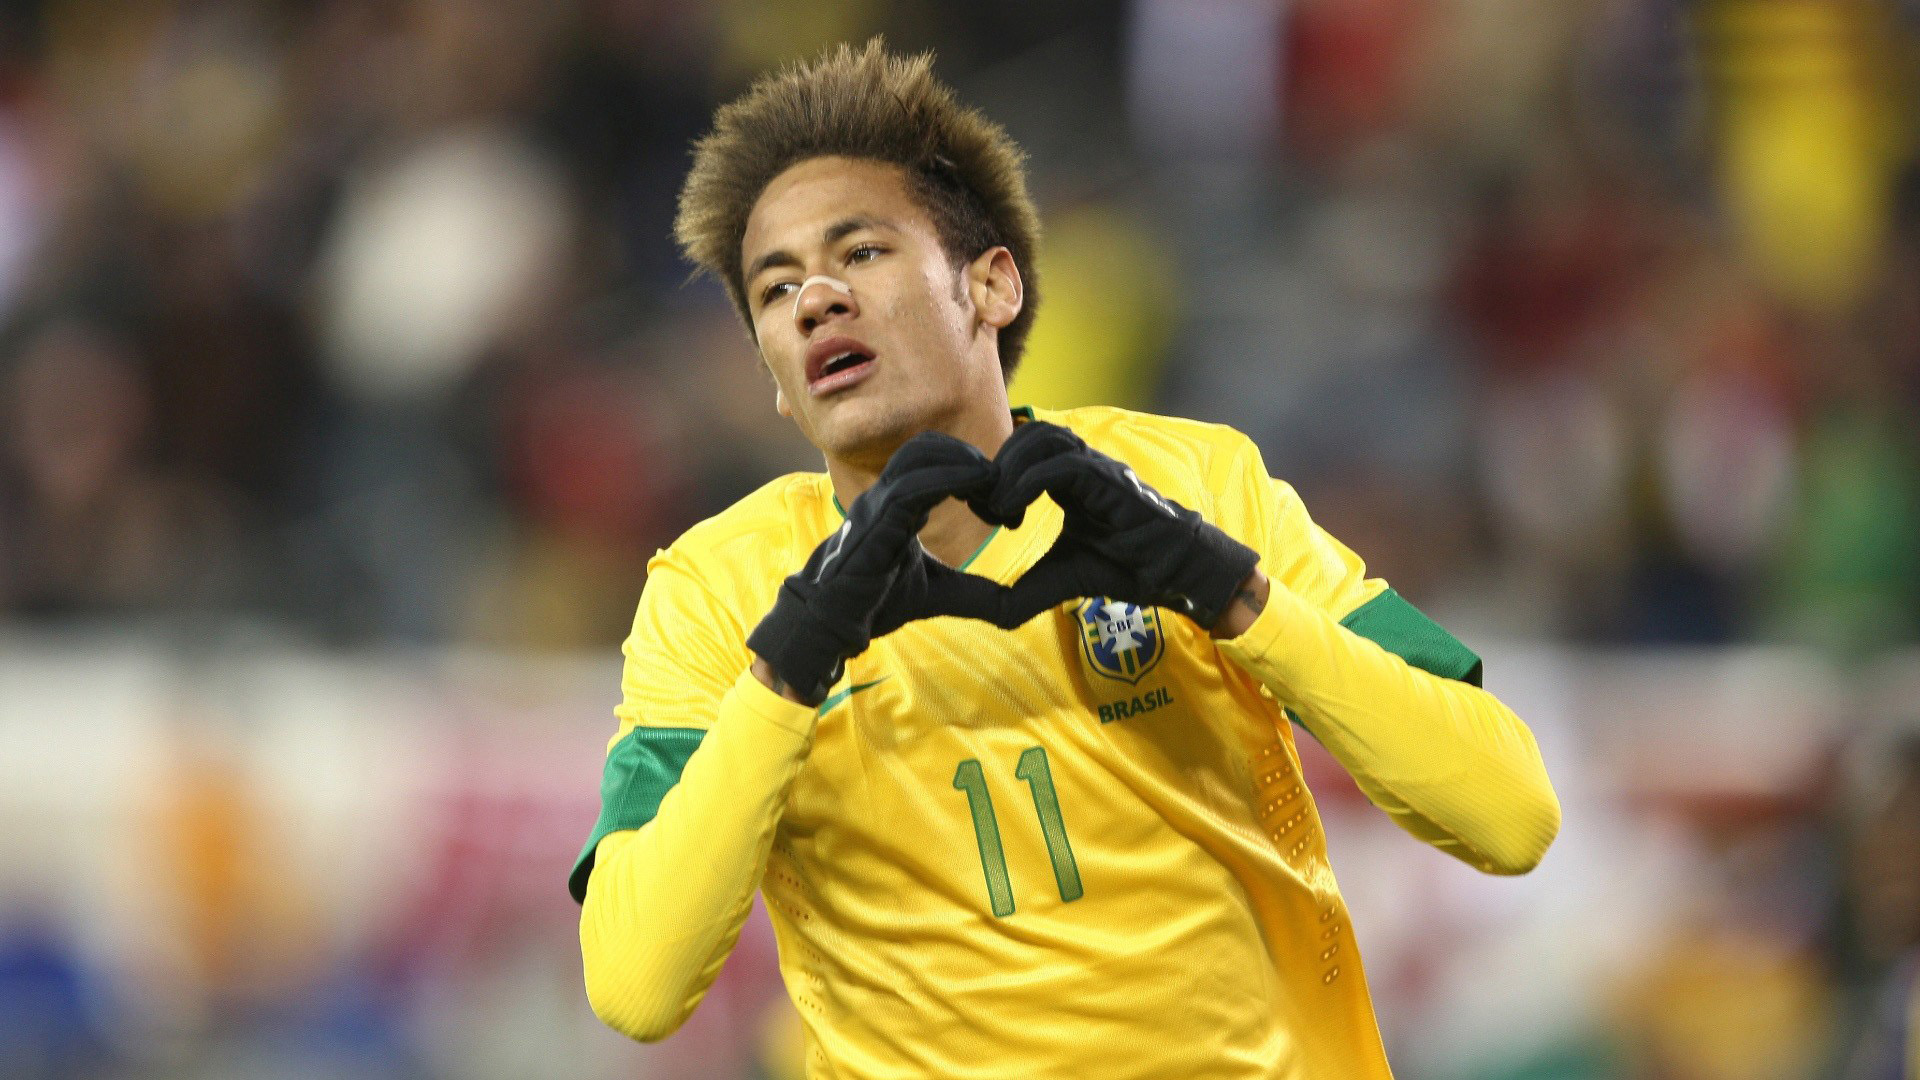 Top 13 Latest Neymar Wallpaper Free-Neymar jr Skills